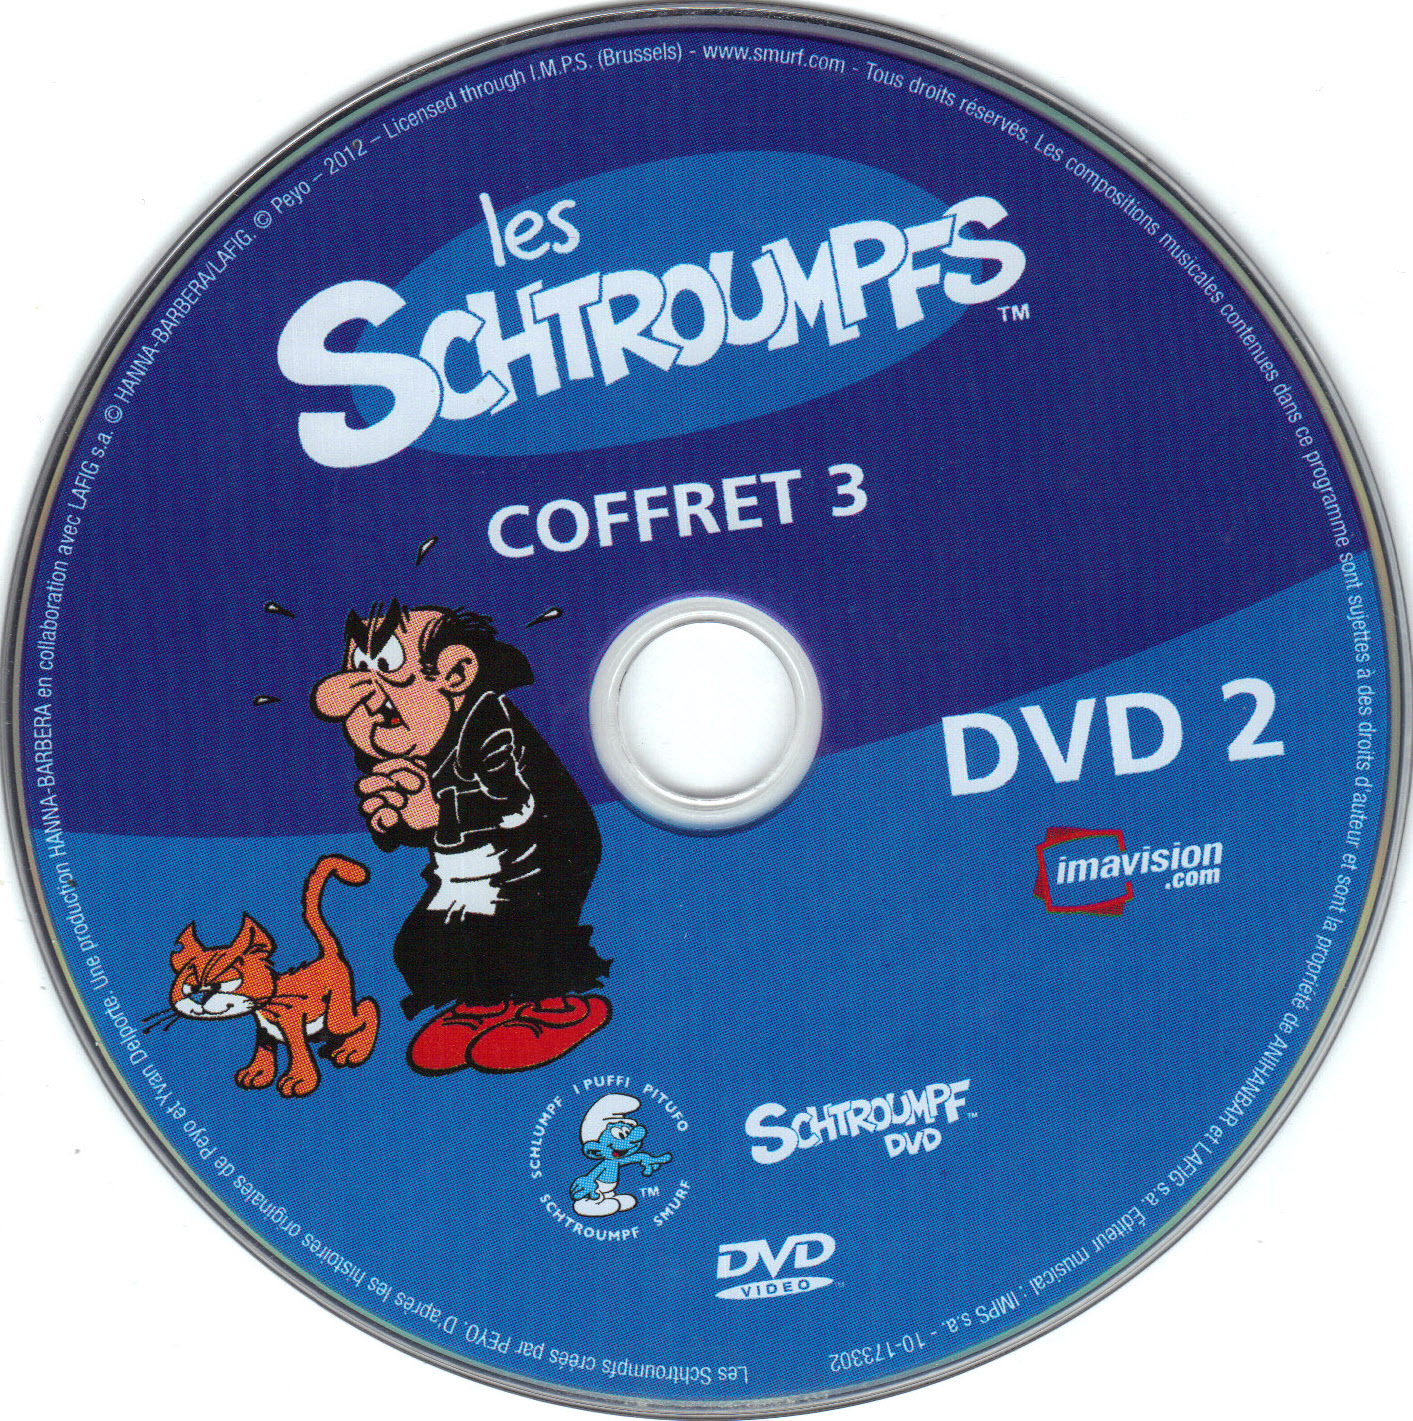 Les Schtroumpfs COFFRET 3 DISC 2